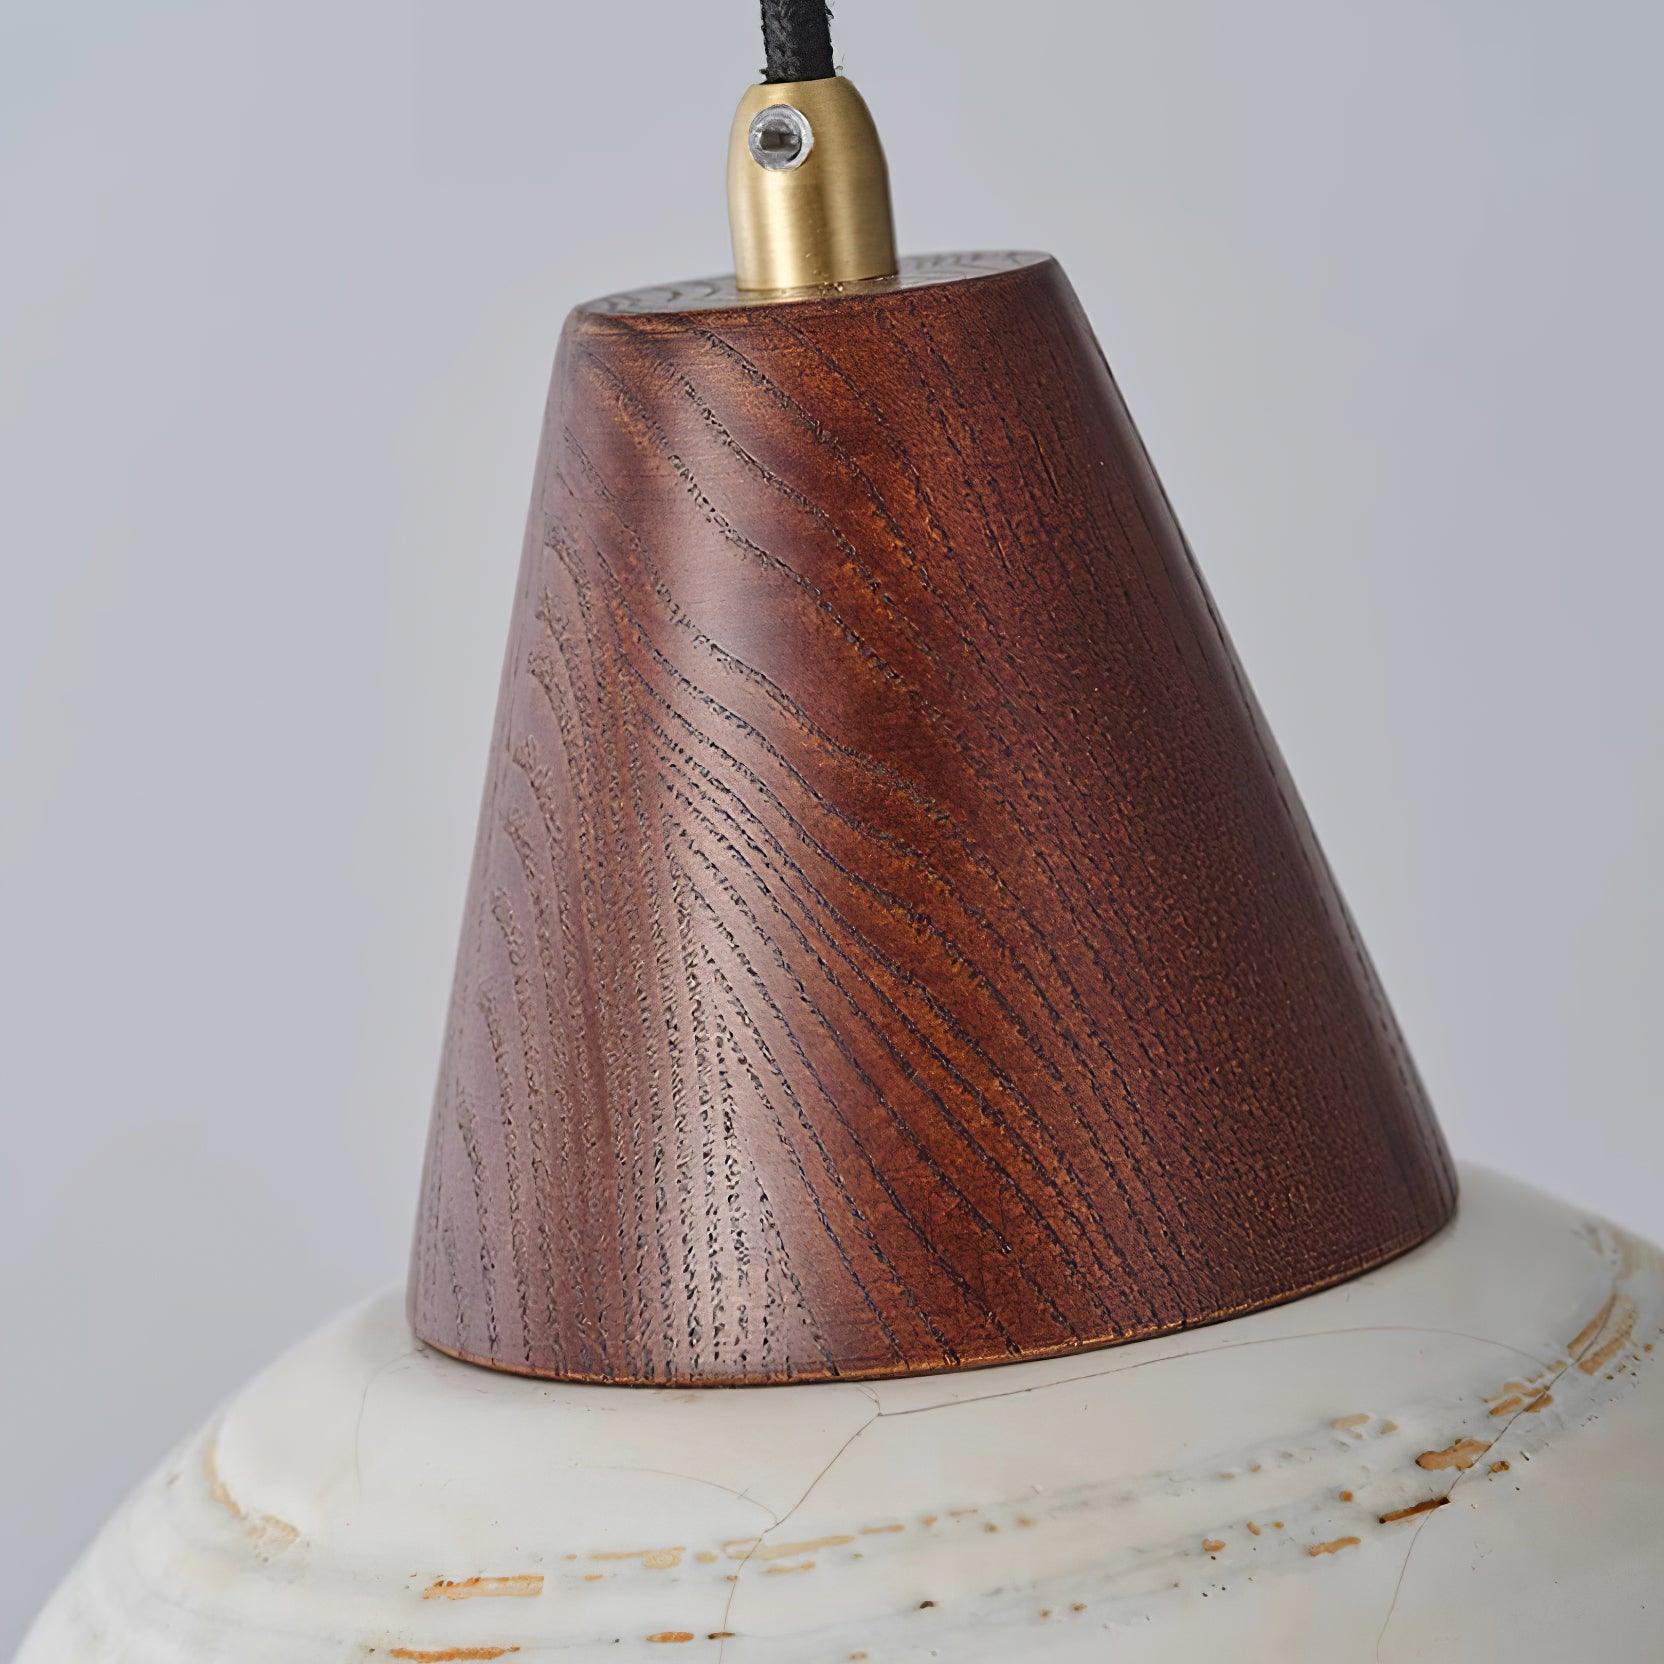 Beata Ceramics Pendant Lamp 9.4″- 8.6″ - Docos